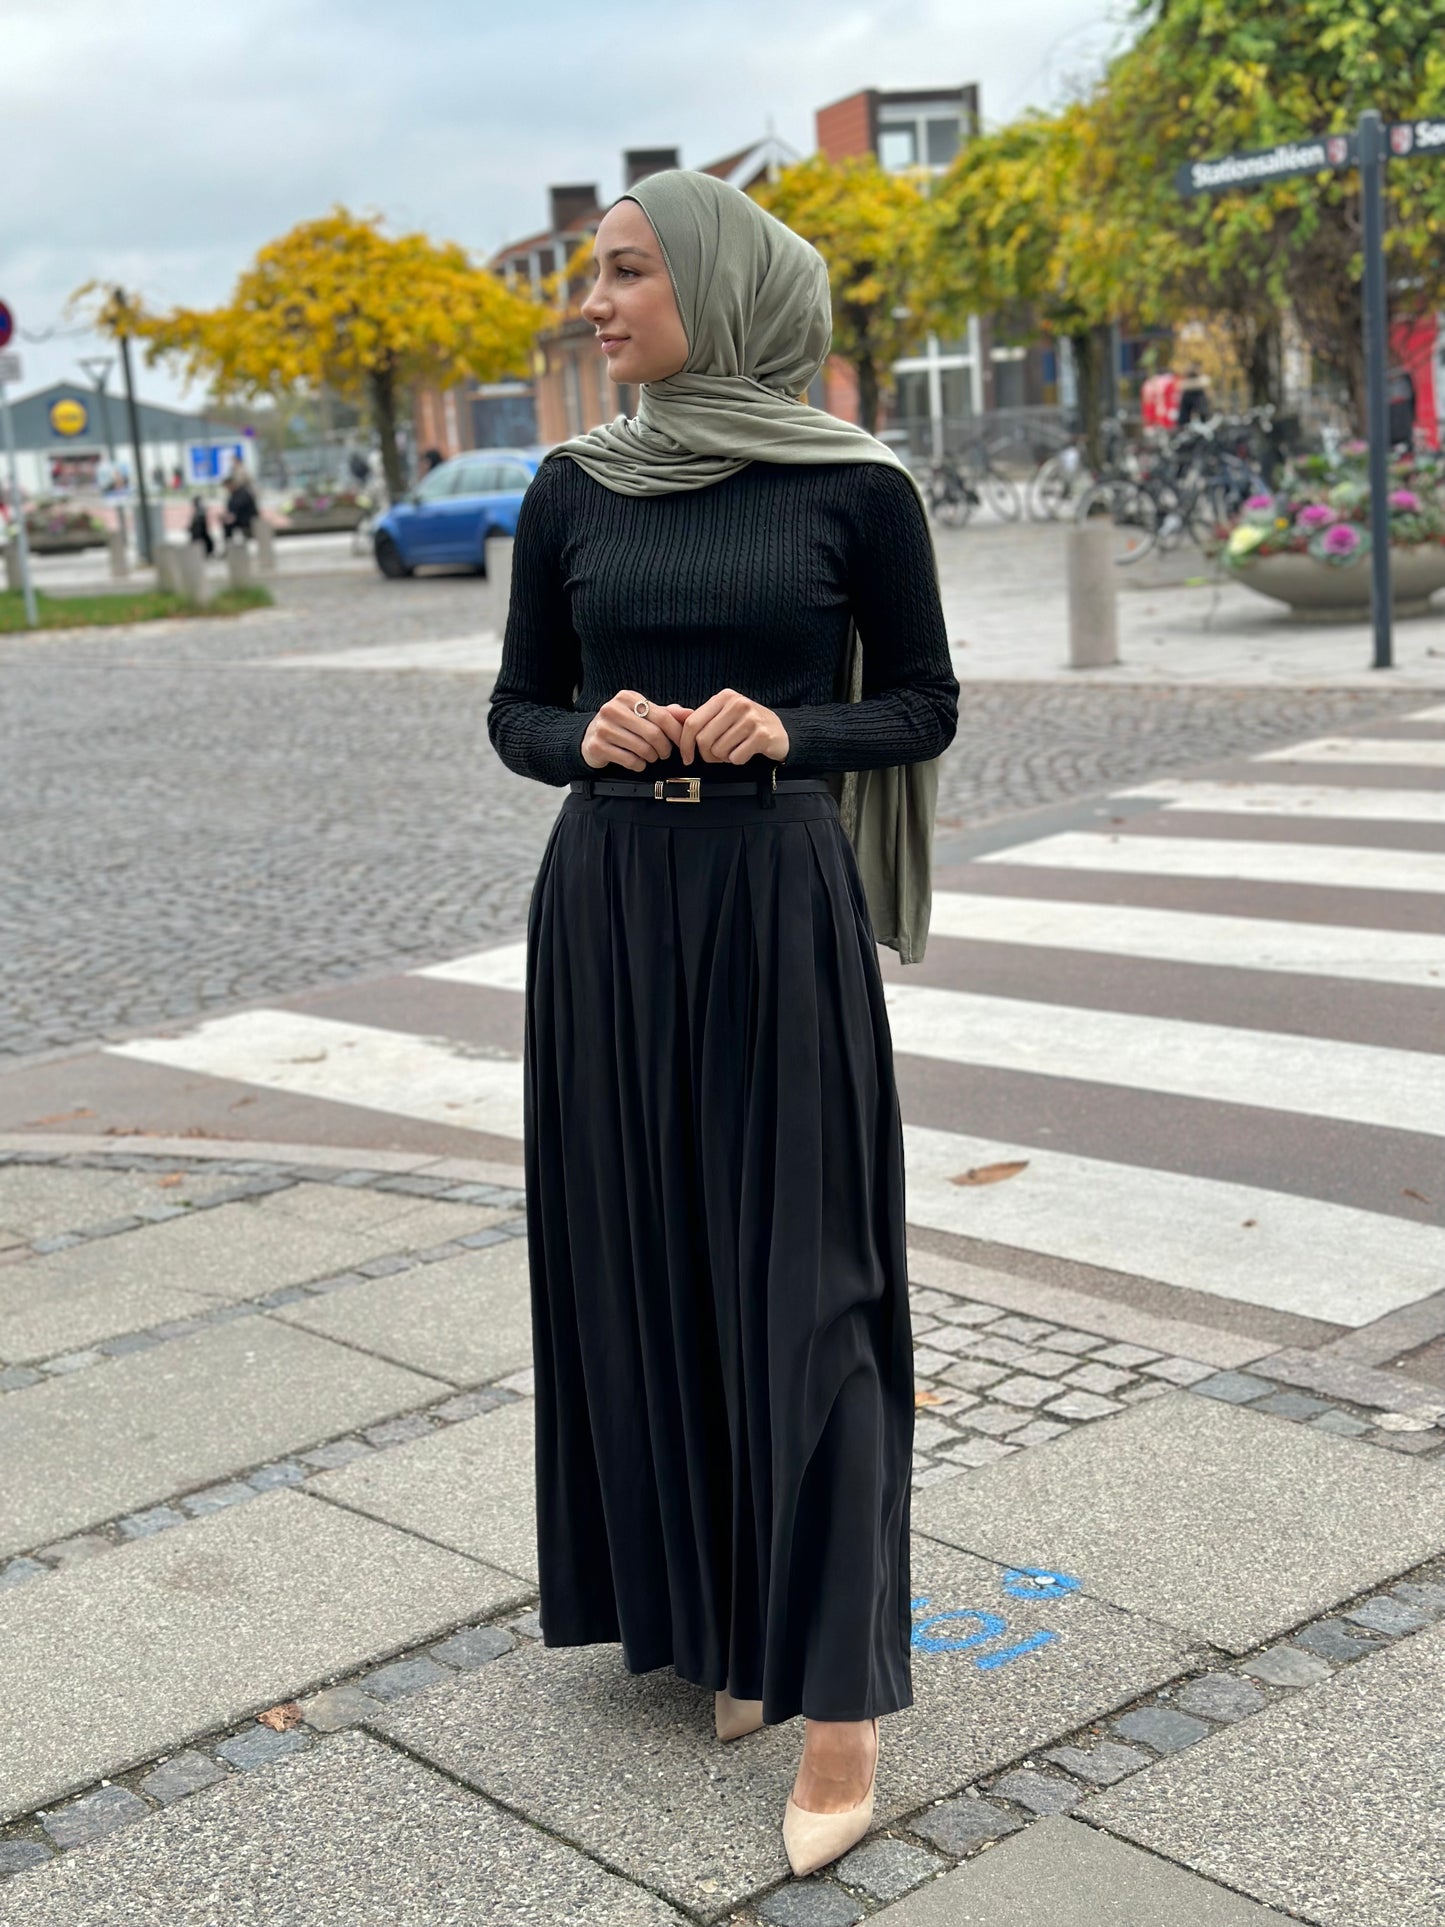 Skirt - Black